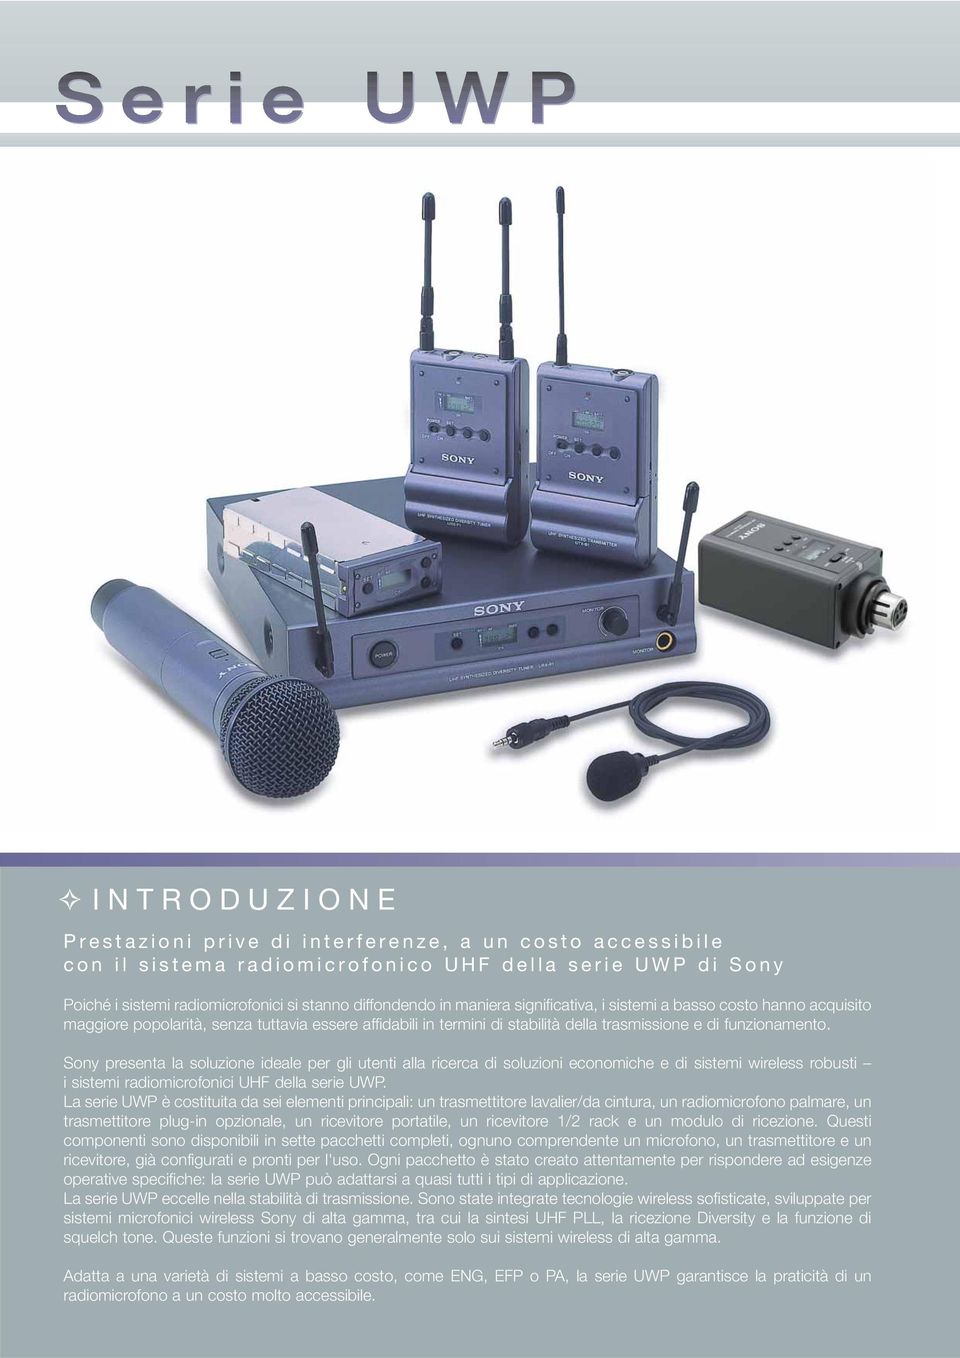 Sony presenta la soluzione ideale per gli utenti alla ricerca di soluzioni economiche e di sistemi wireless robusti i sistemi radiomicrofonici UHF della serie UWP.